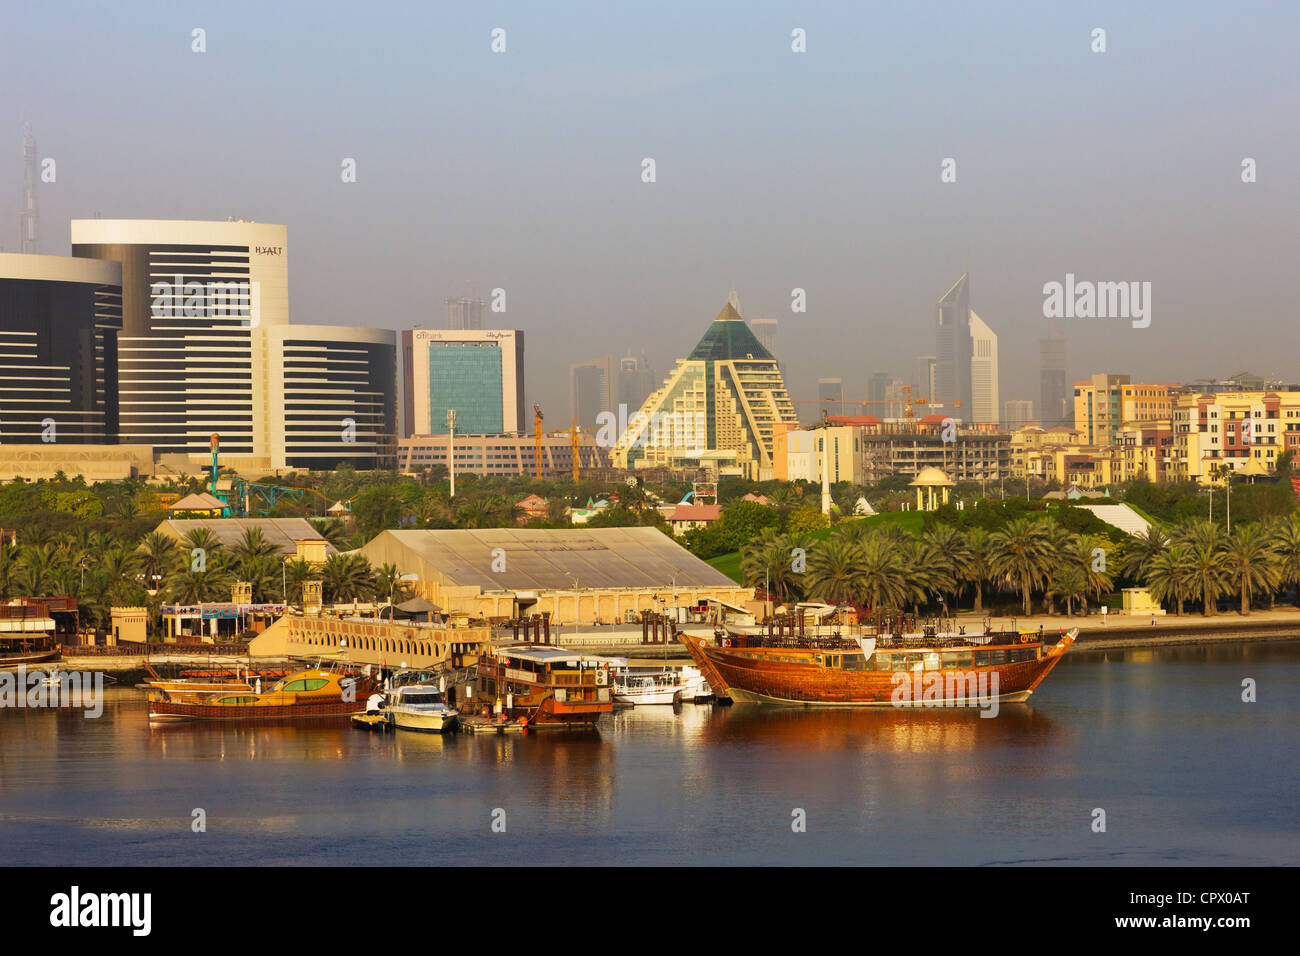 Skyline and boats along the Khor Dubai (Dubai Creek), Dubai, United Arab Emirates Stock Photo